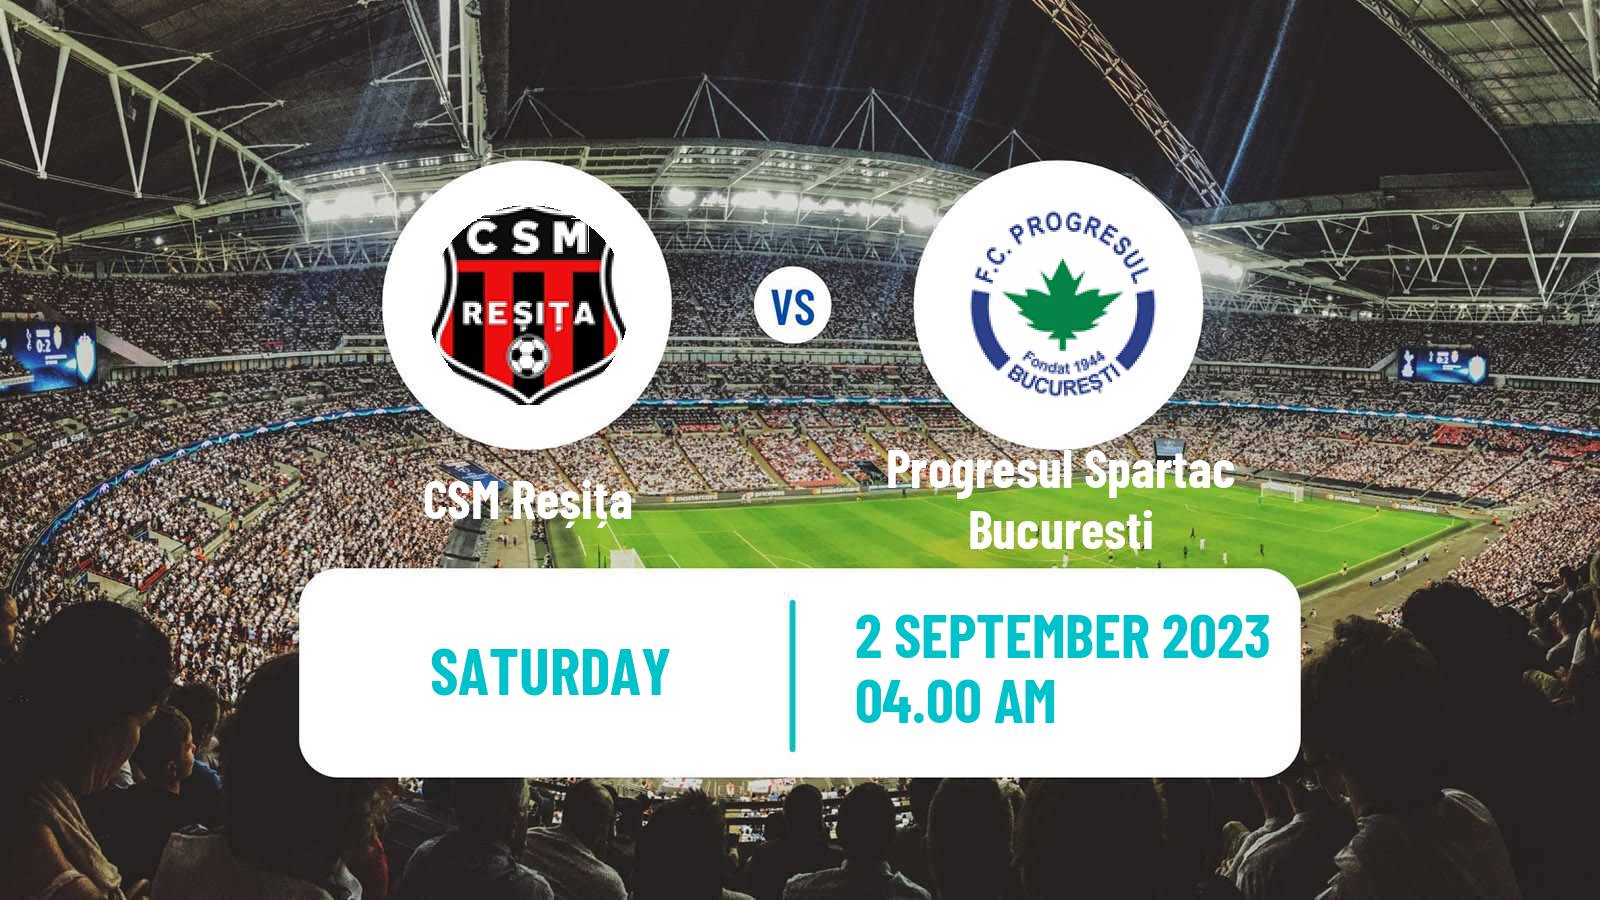 Soccer Romanian Division 2 Reșița - Progresul Spartac Bucuresti